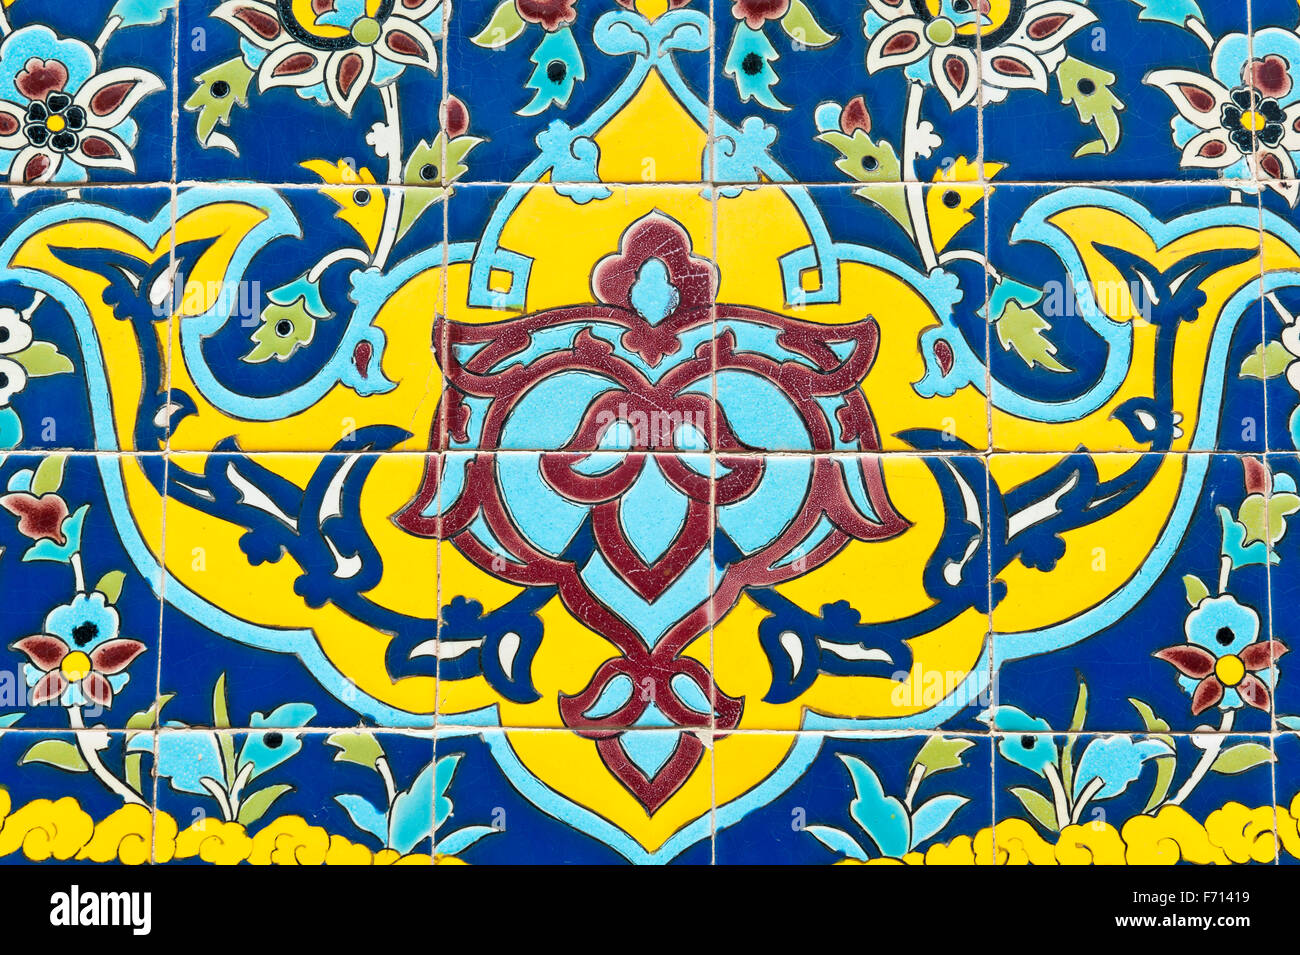 Décoration florale, carreaux émaillés, le Golestan Palace, Téhéran, Iran Banque D'Images